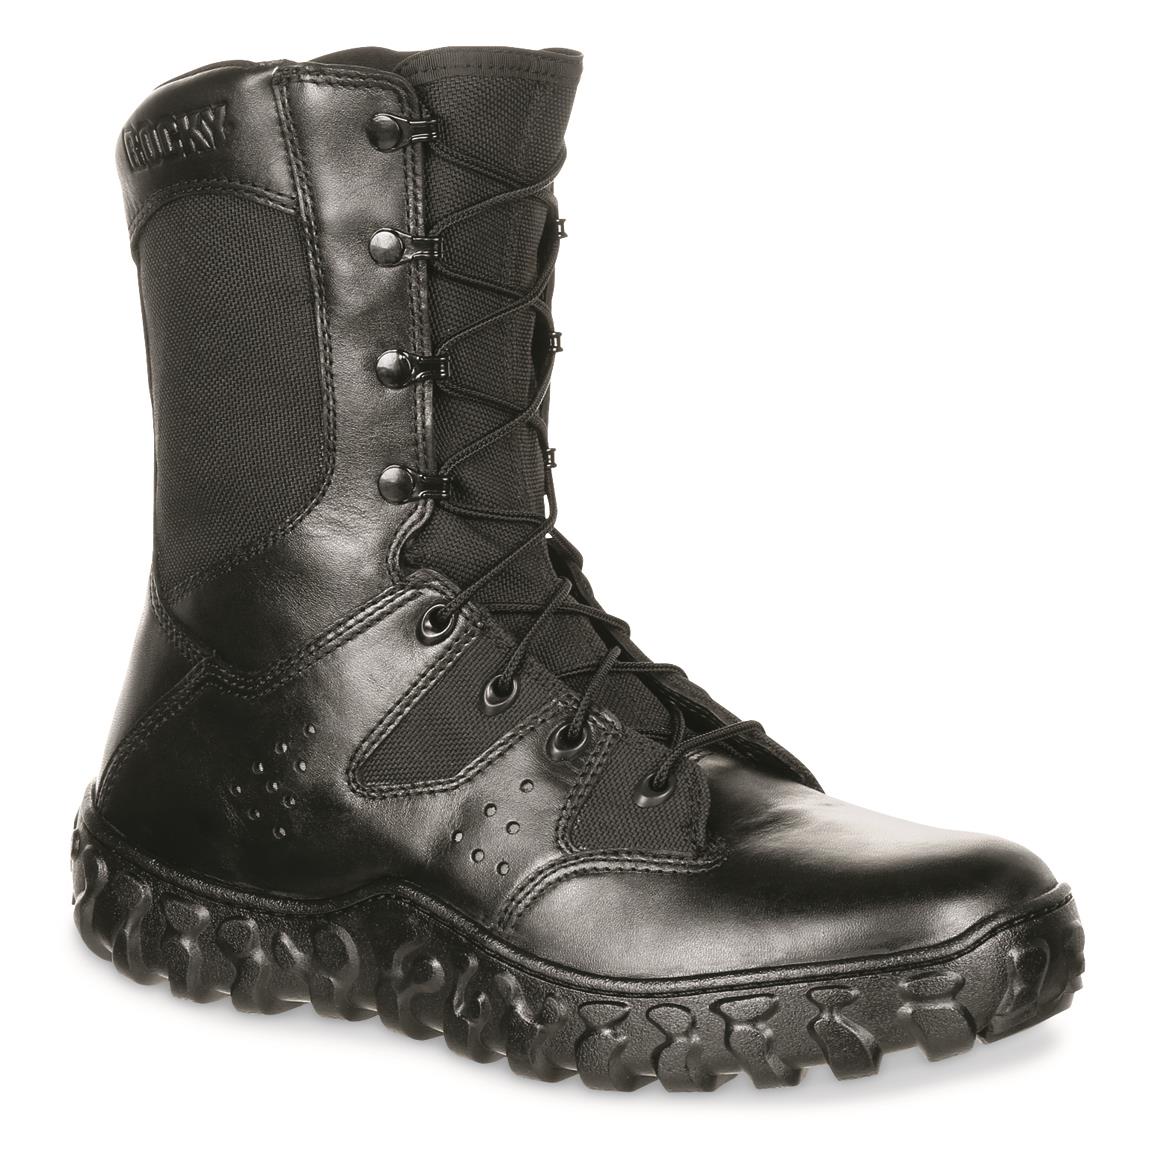 rockies tactical boots